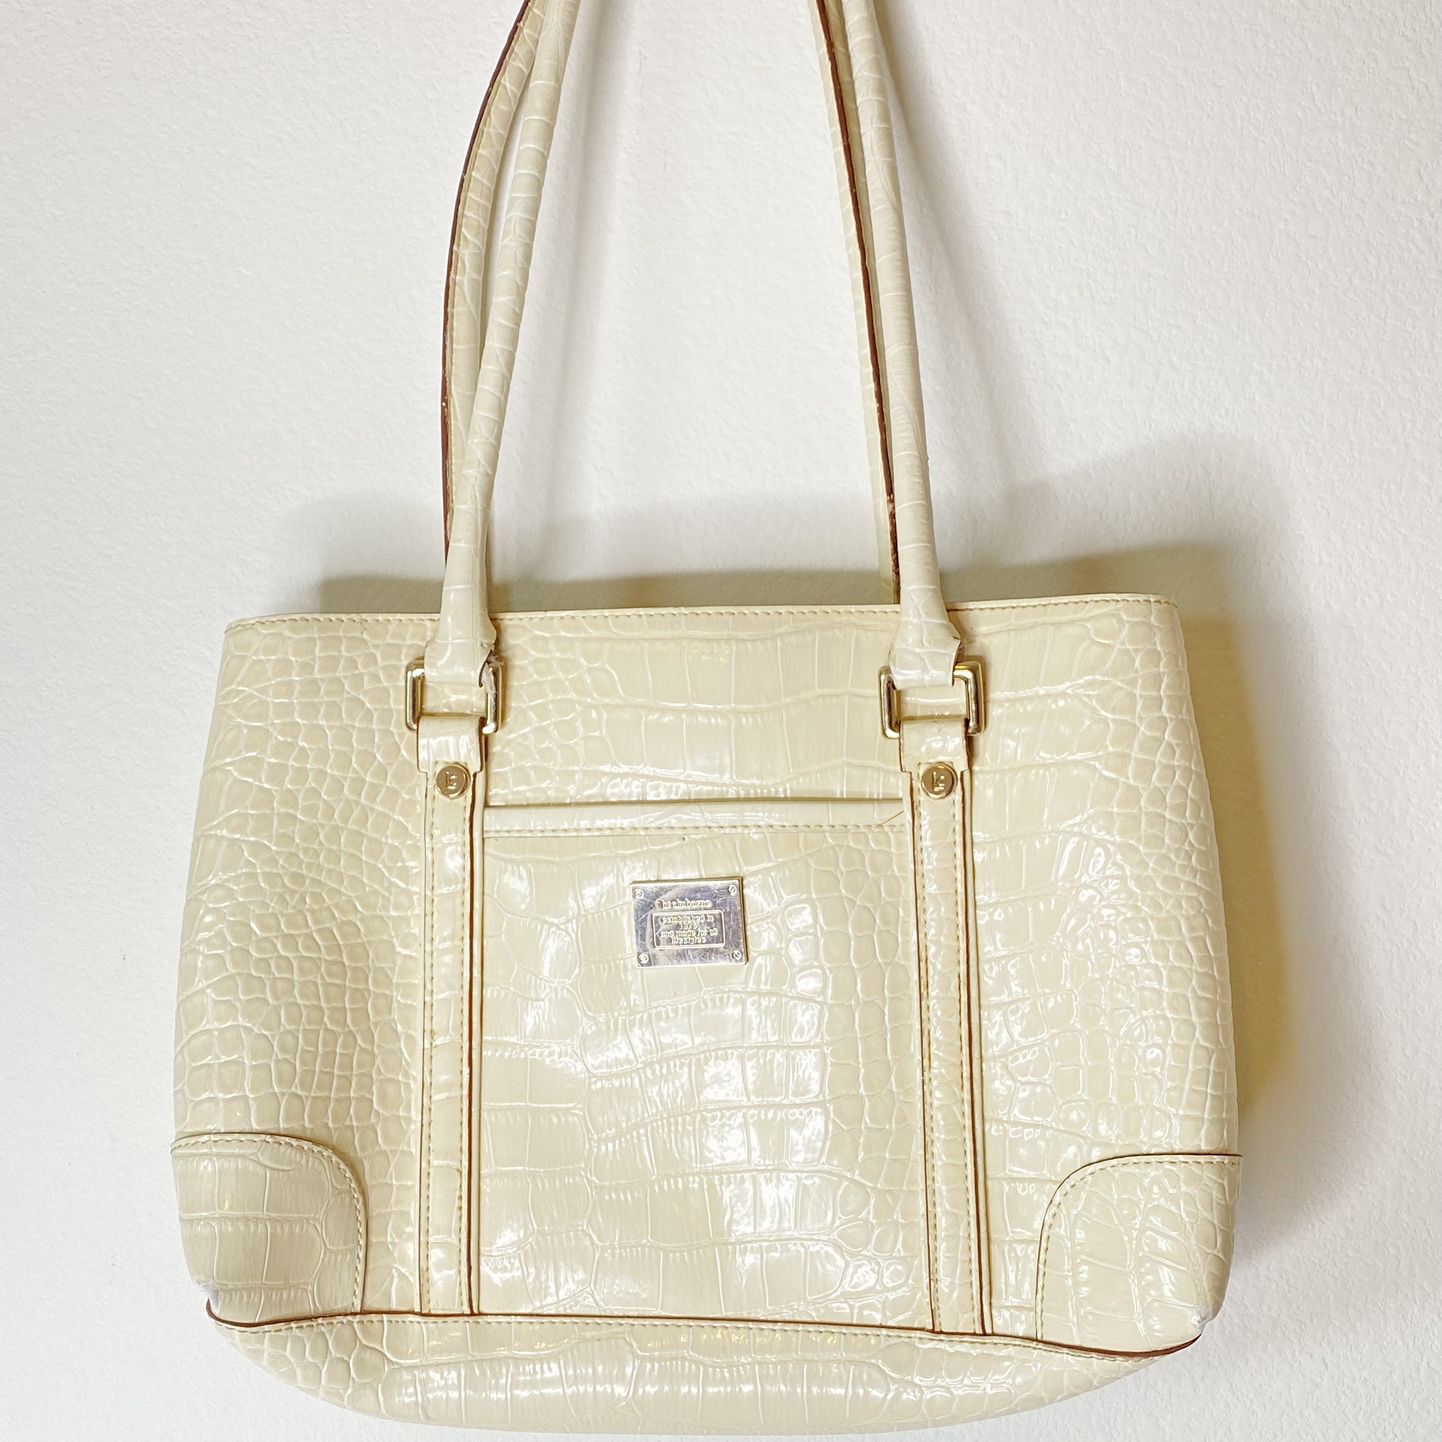 Liz Claiborne Purse Handbag Cream Off White Faux Croc Tote Satchel Shoulder  Bag for Sale in Quartz Hill, CA - OfferUp